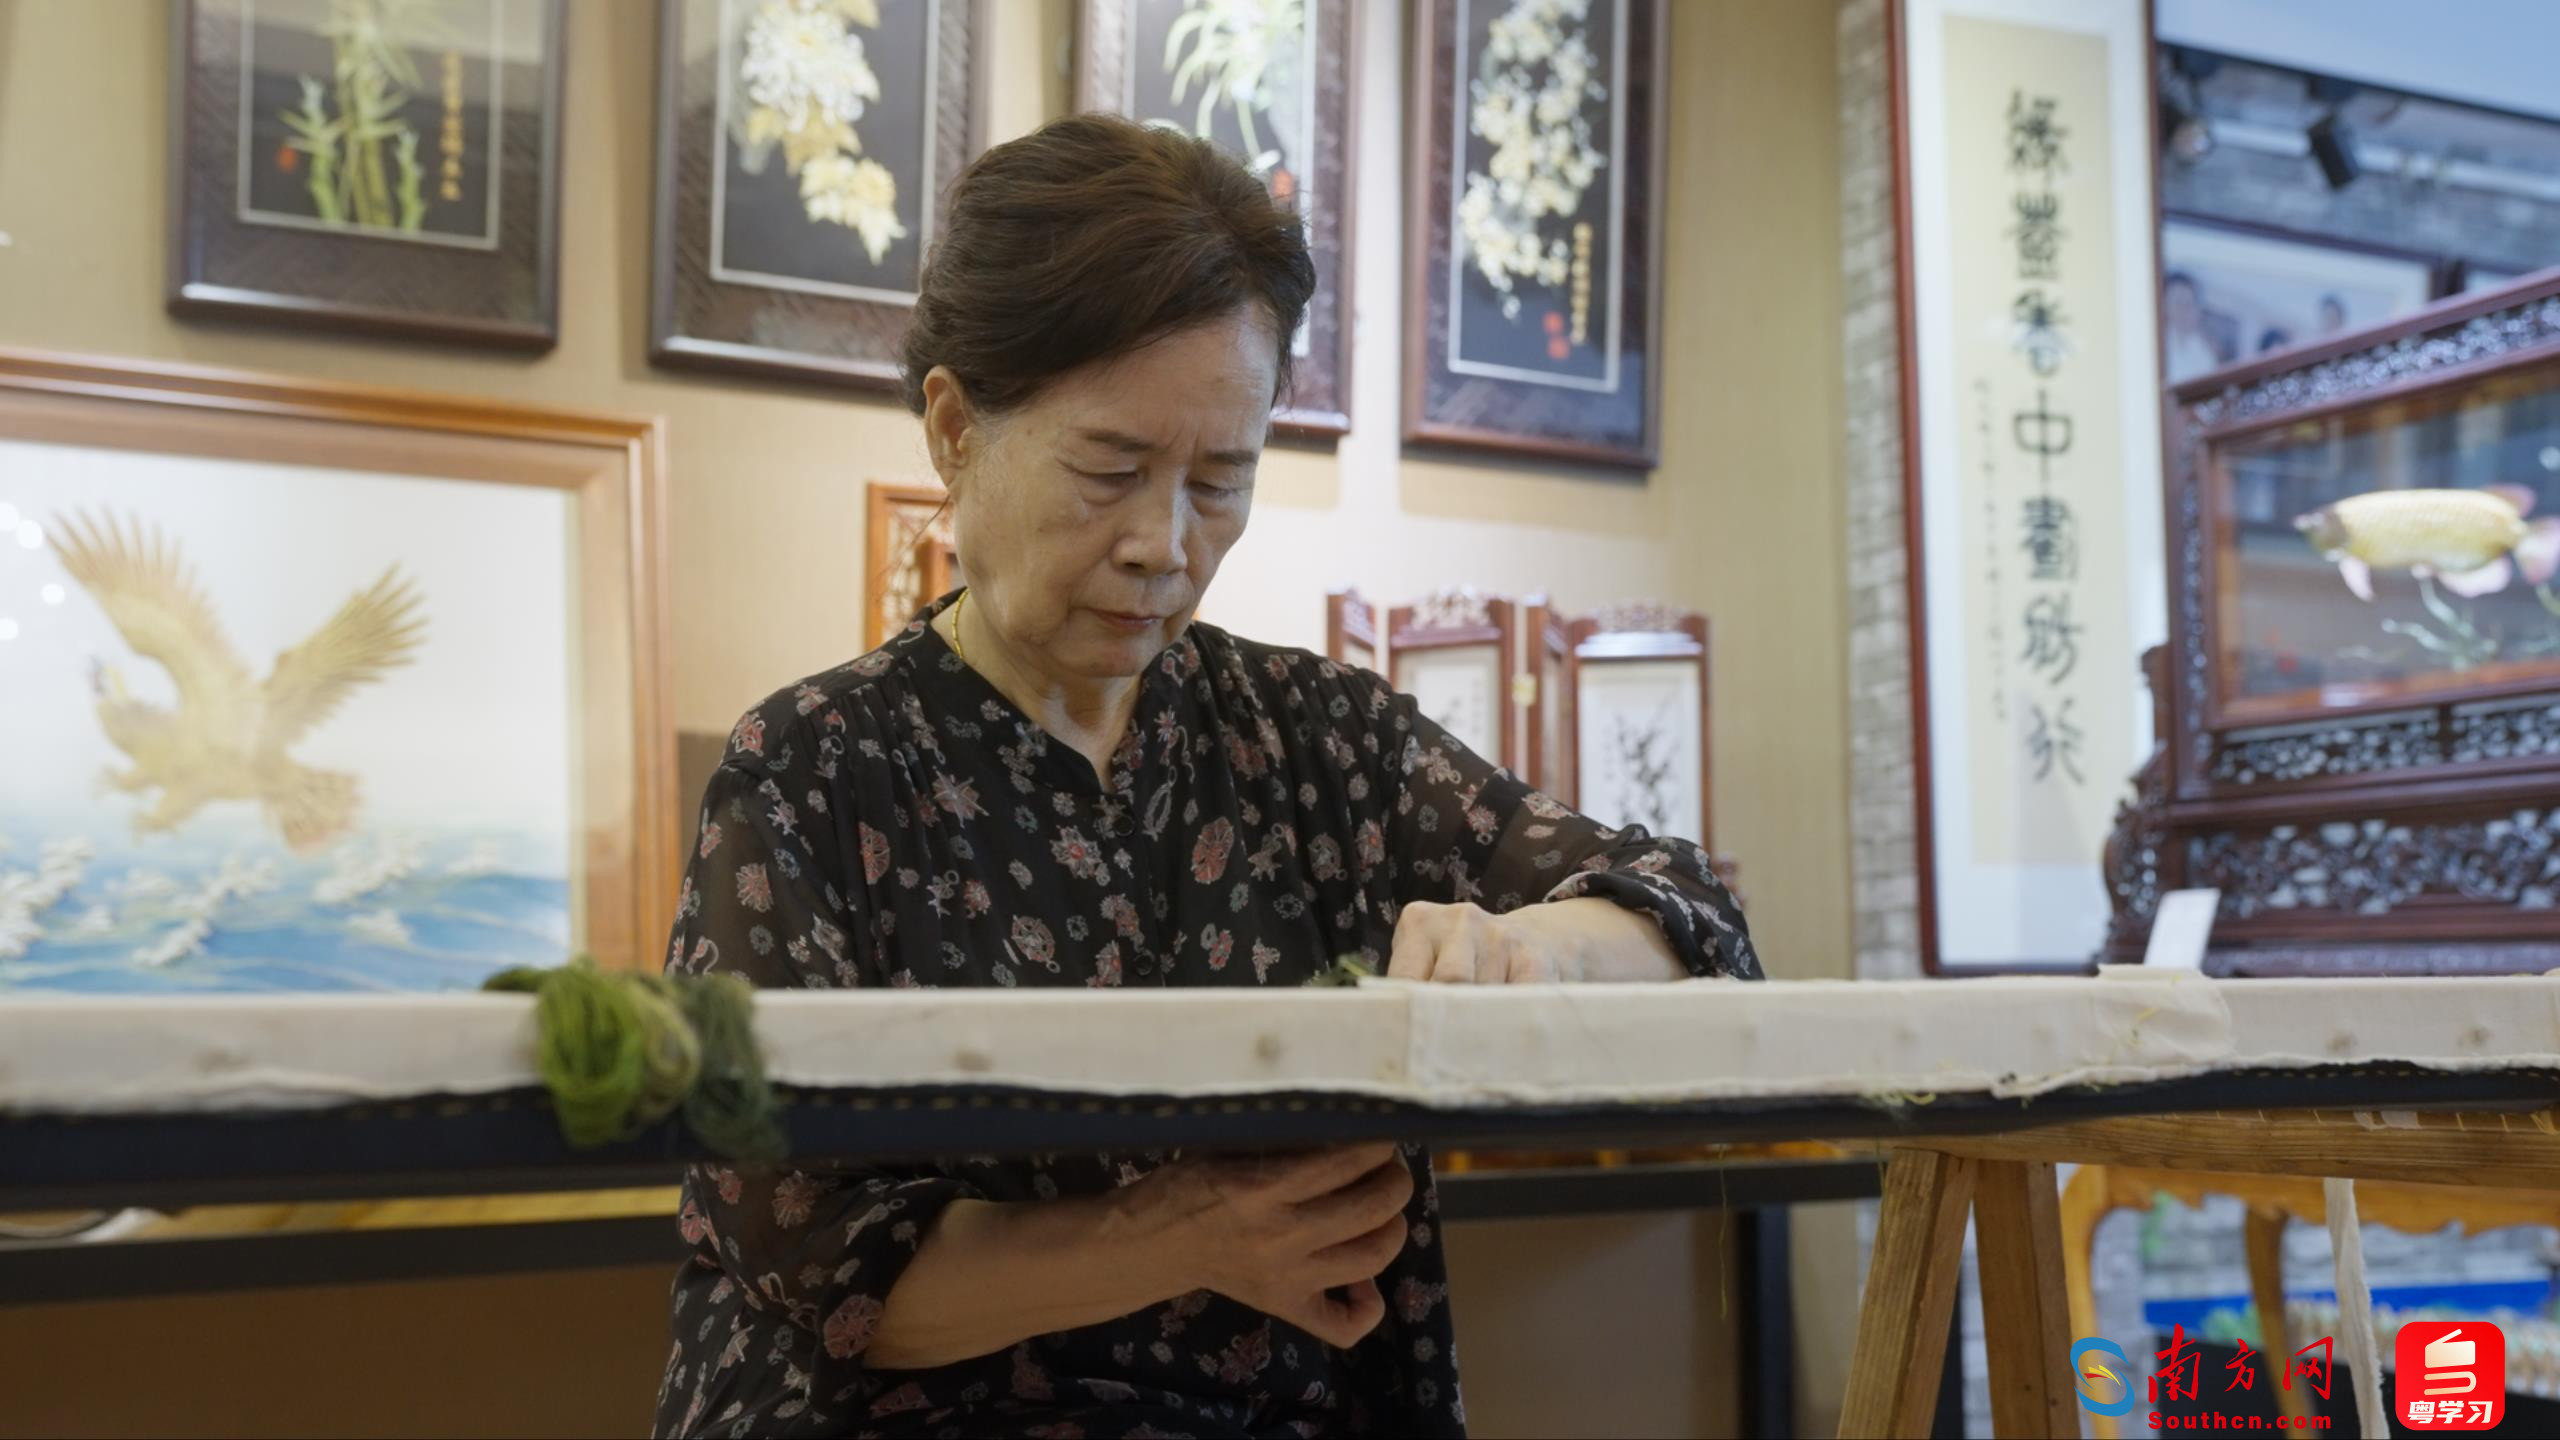 康惠芳正在创作一部名为《潮州》的潮绣作品。